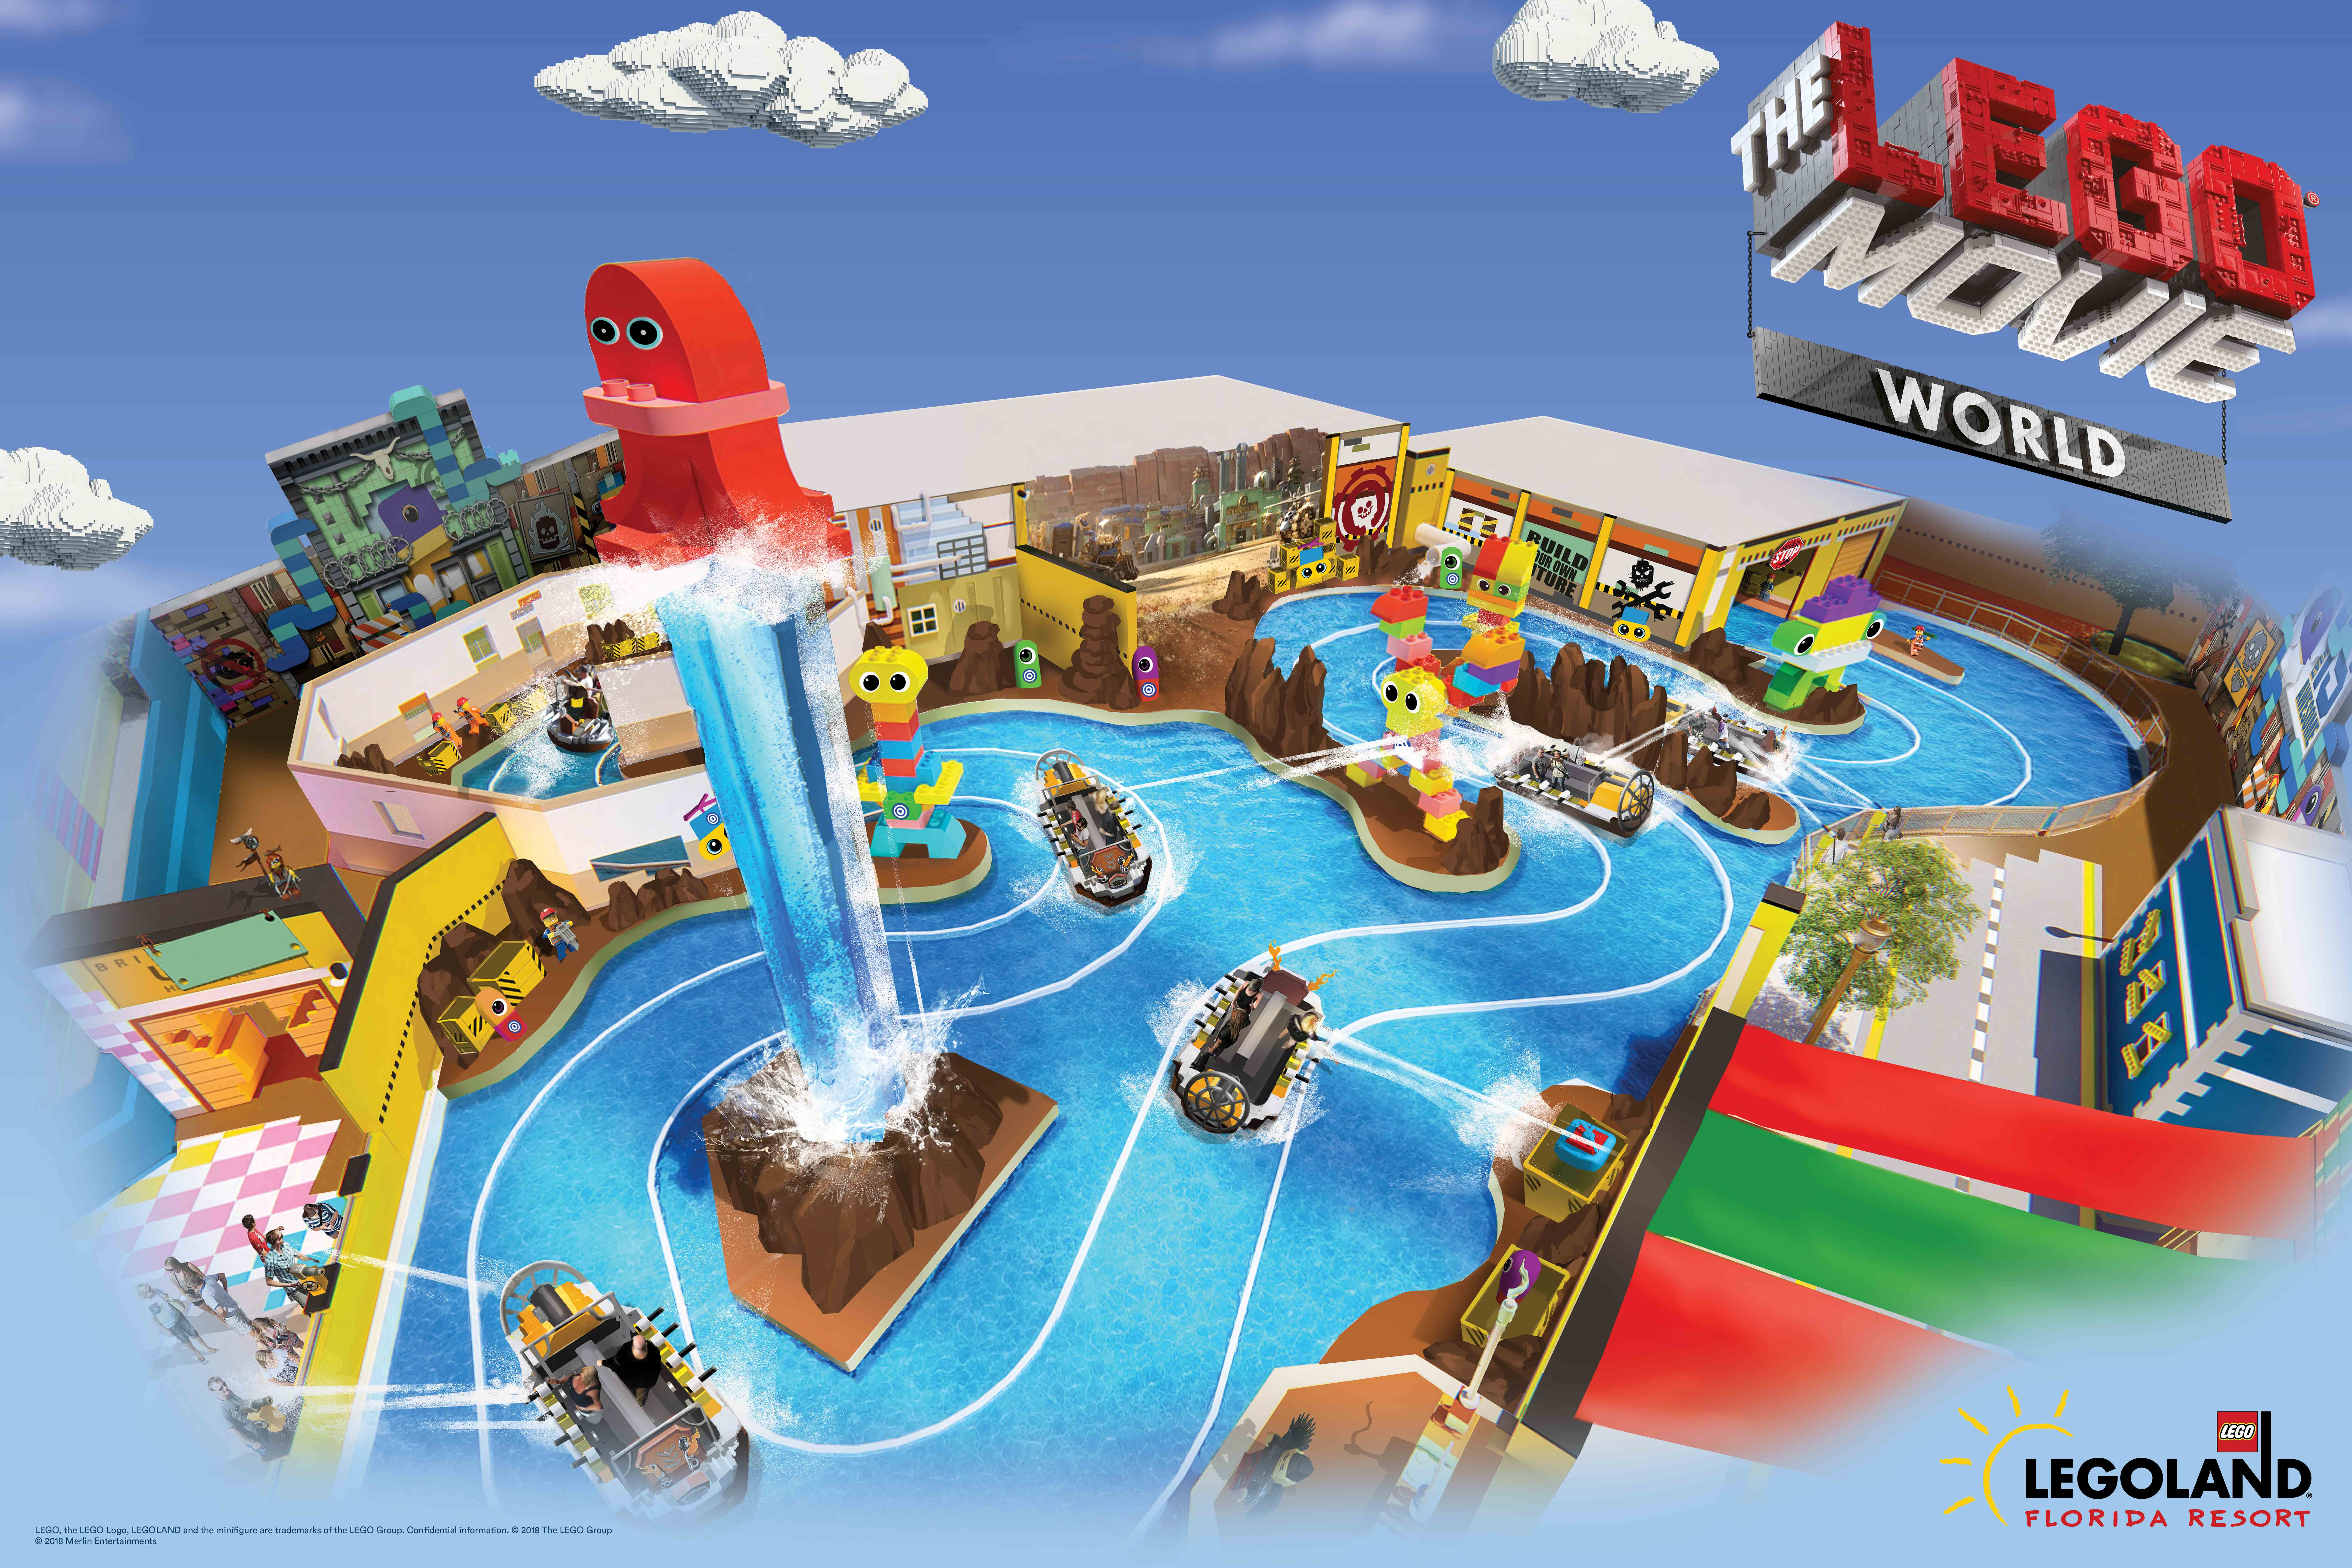 Legoland Florida Resort Celebrates Year of Awesome